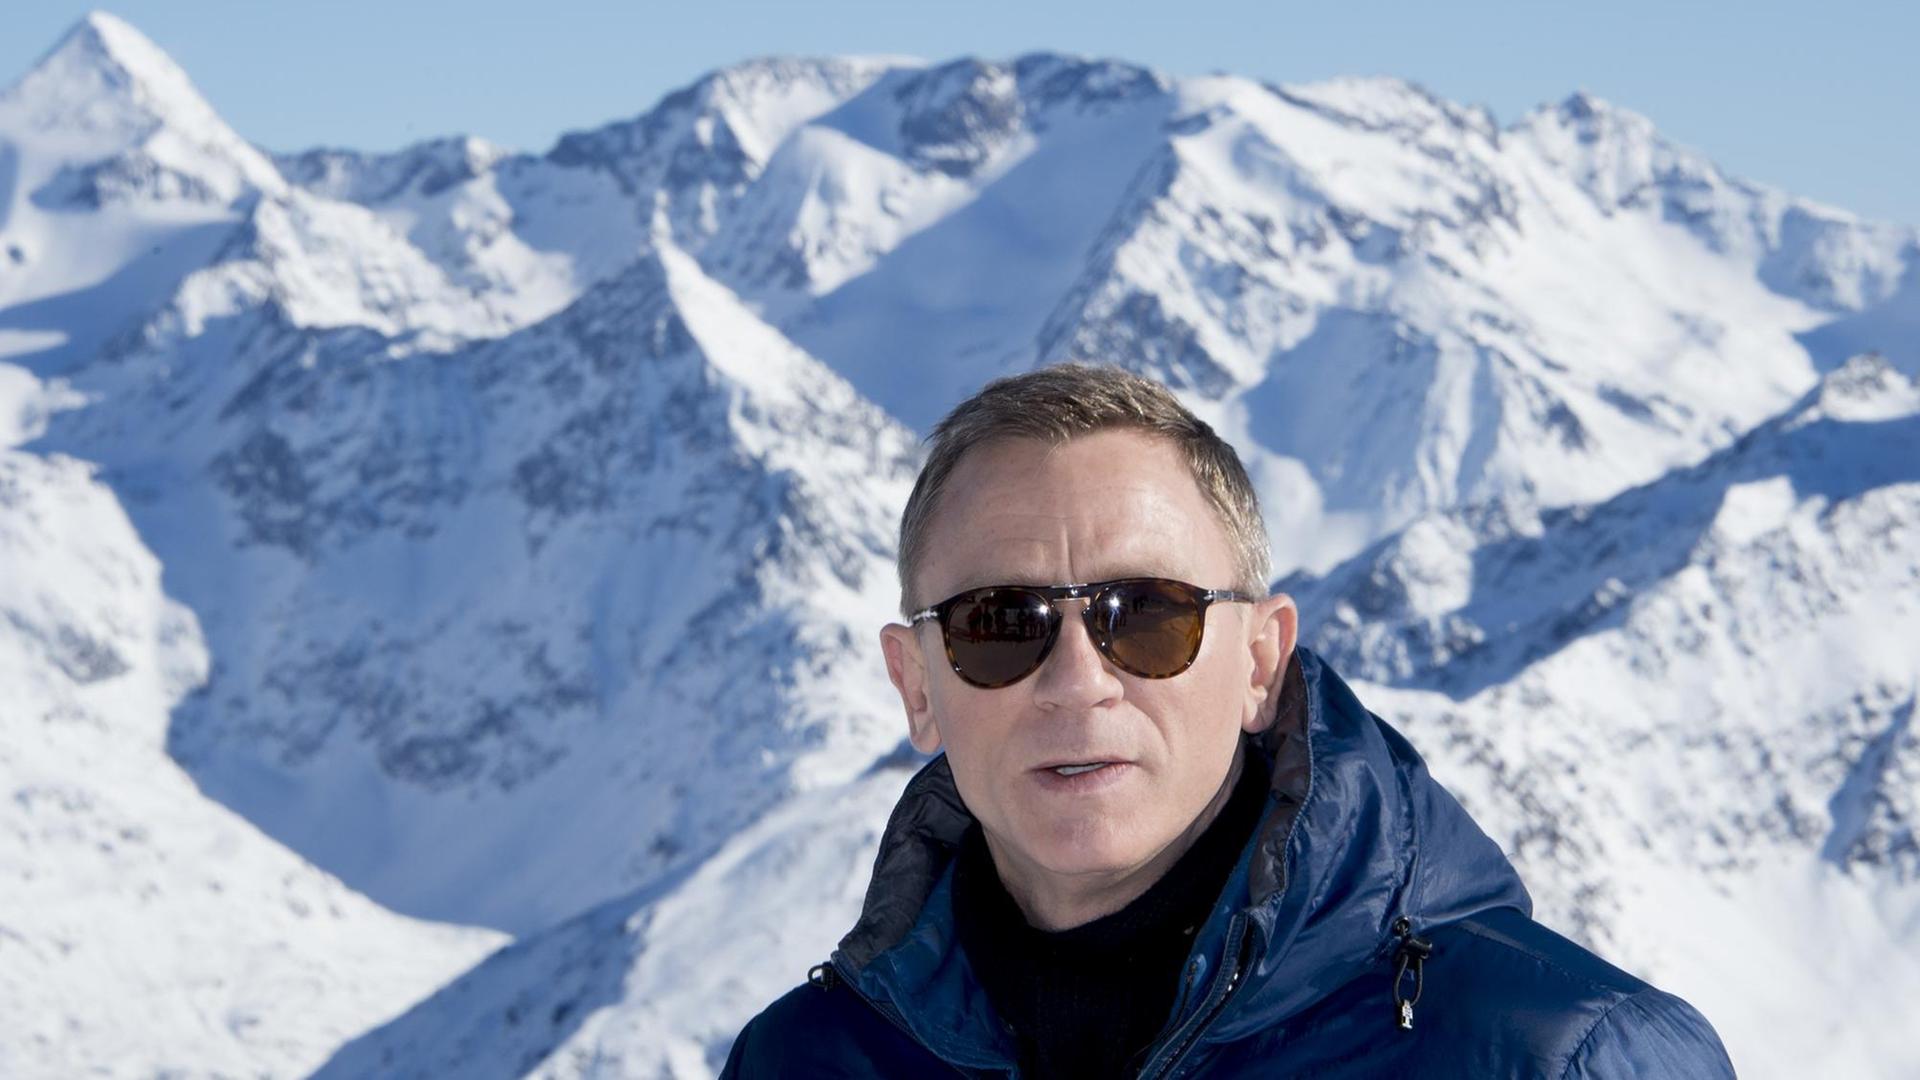 Daniel Craig, James-Bond-Darsteller im Film "Spectre", vor Tiroler Alpenkulisse im österreichischen Sölden